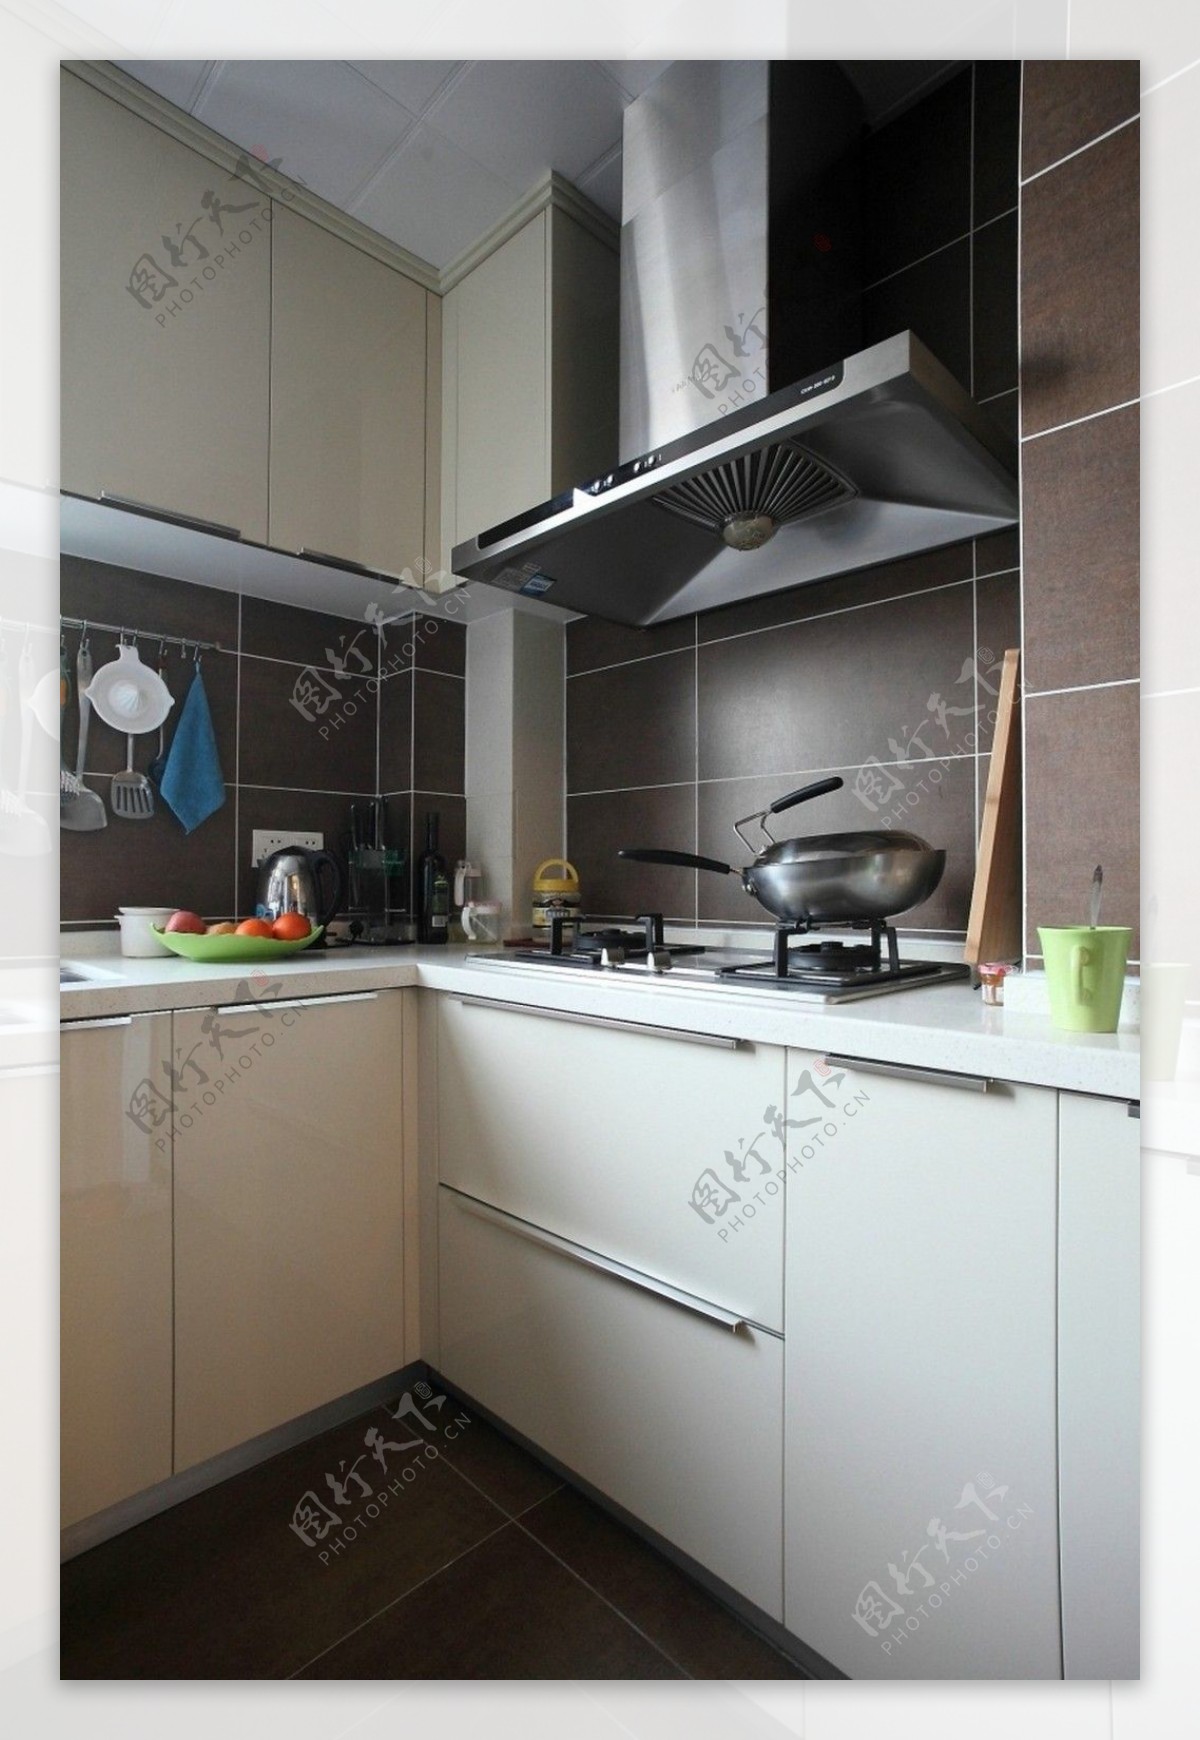 简约风室内设计厨房白色柜子灶台效果图